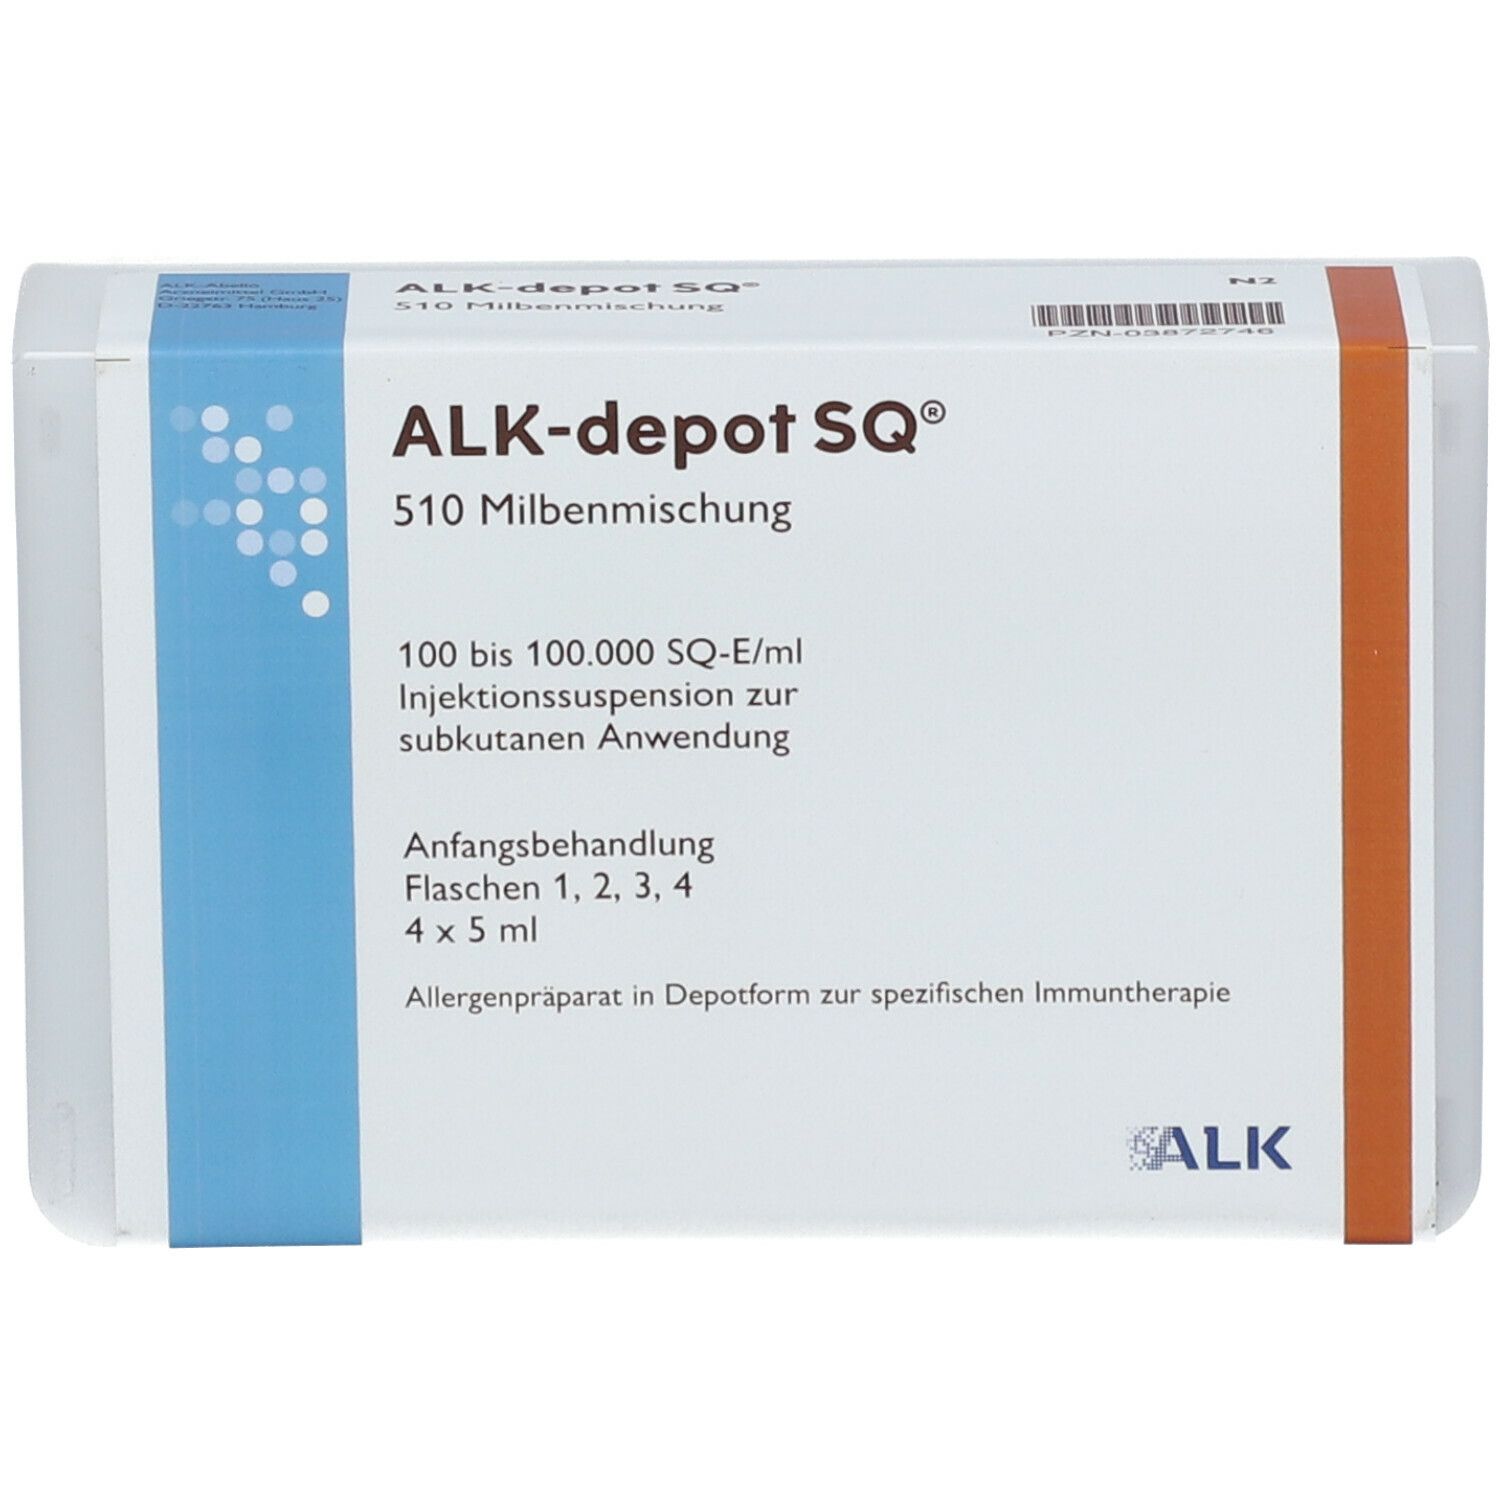 ALK-depot SQ® 510 Milbenmischung